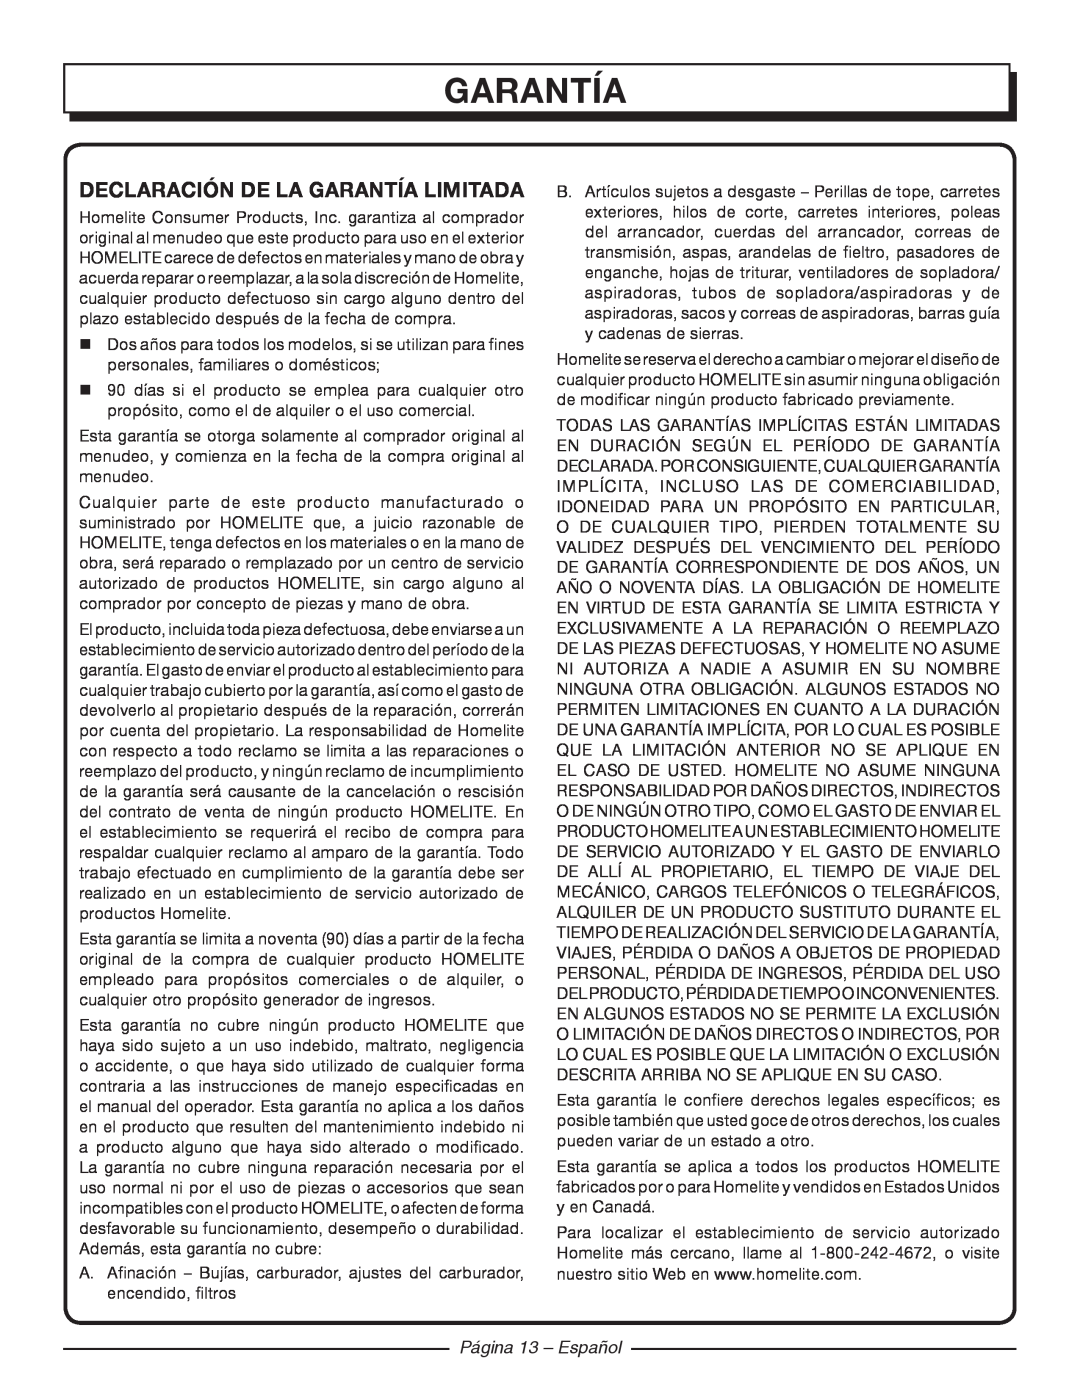 Homelite UT42120 manuel dutilisation garantía, Declaración De La Garantía Limitada, Página 13 - Español 